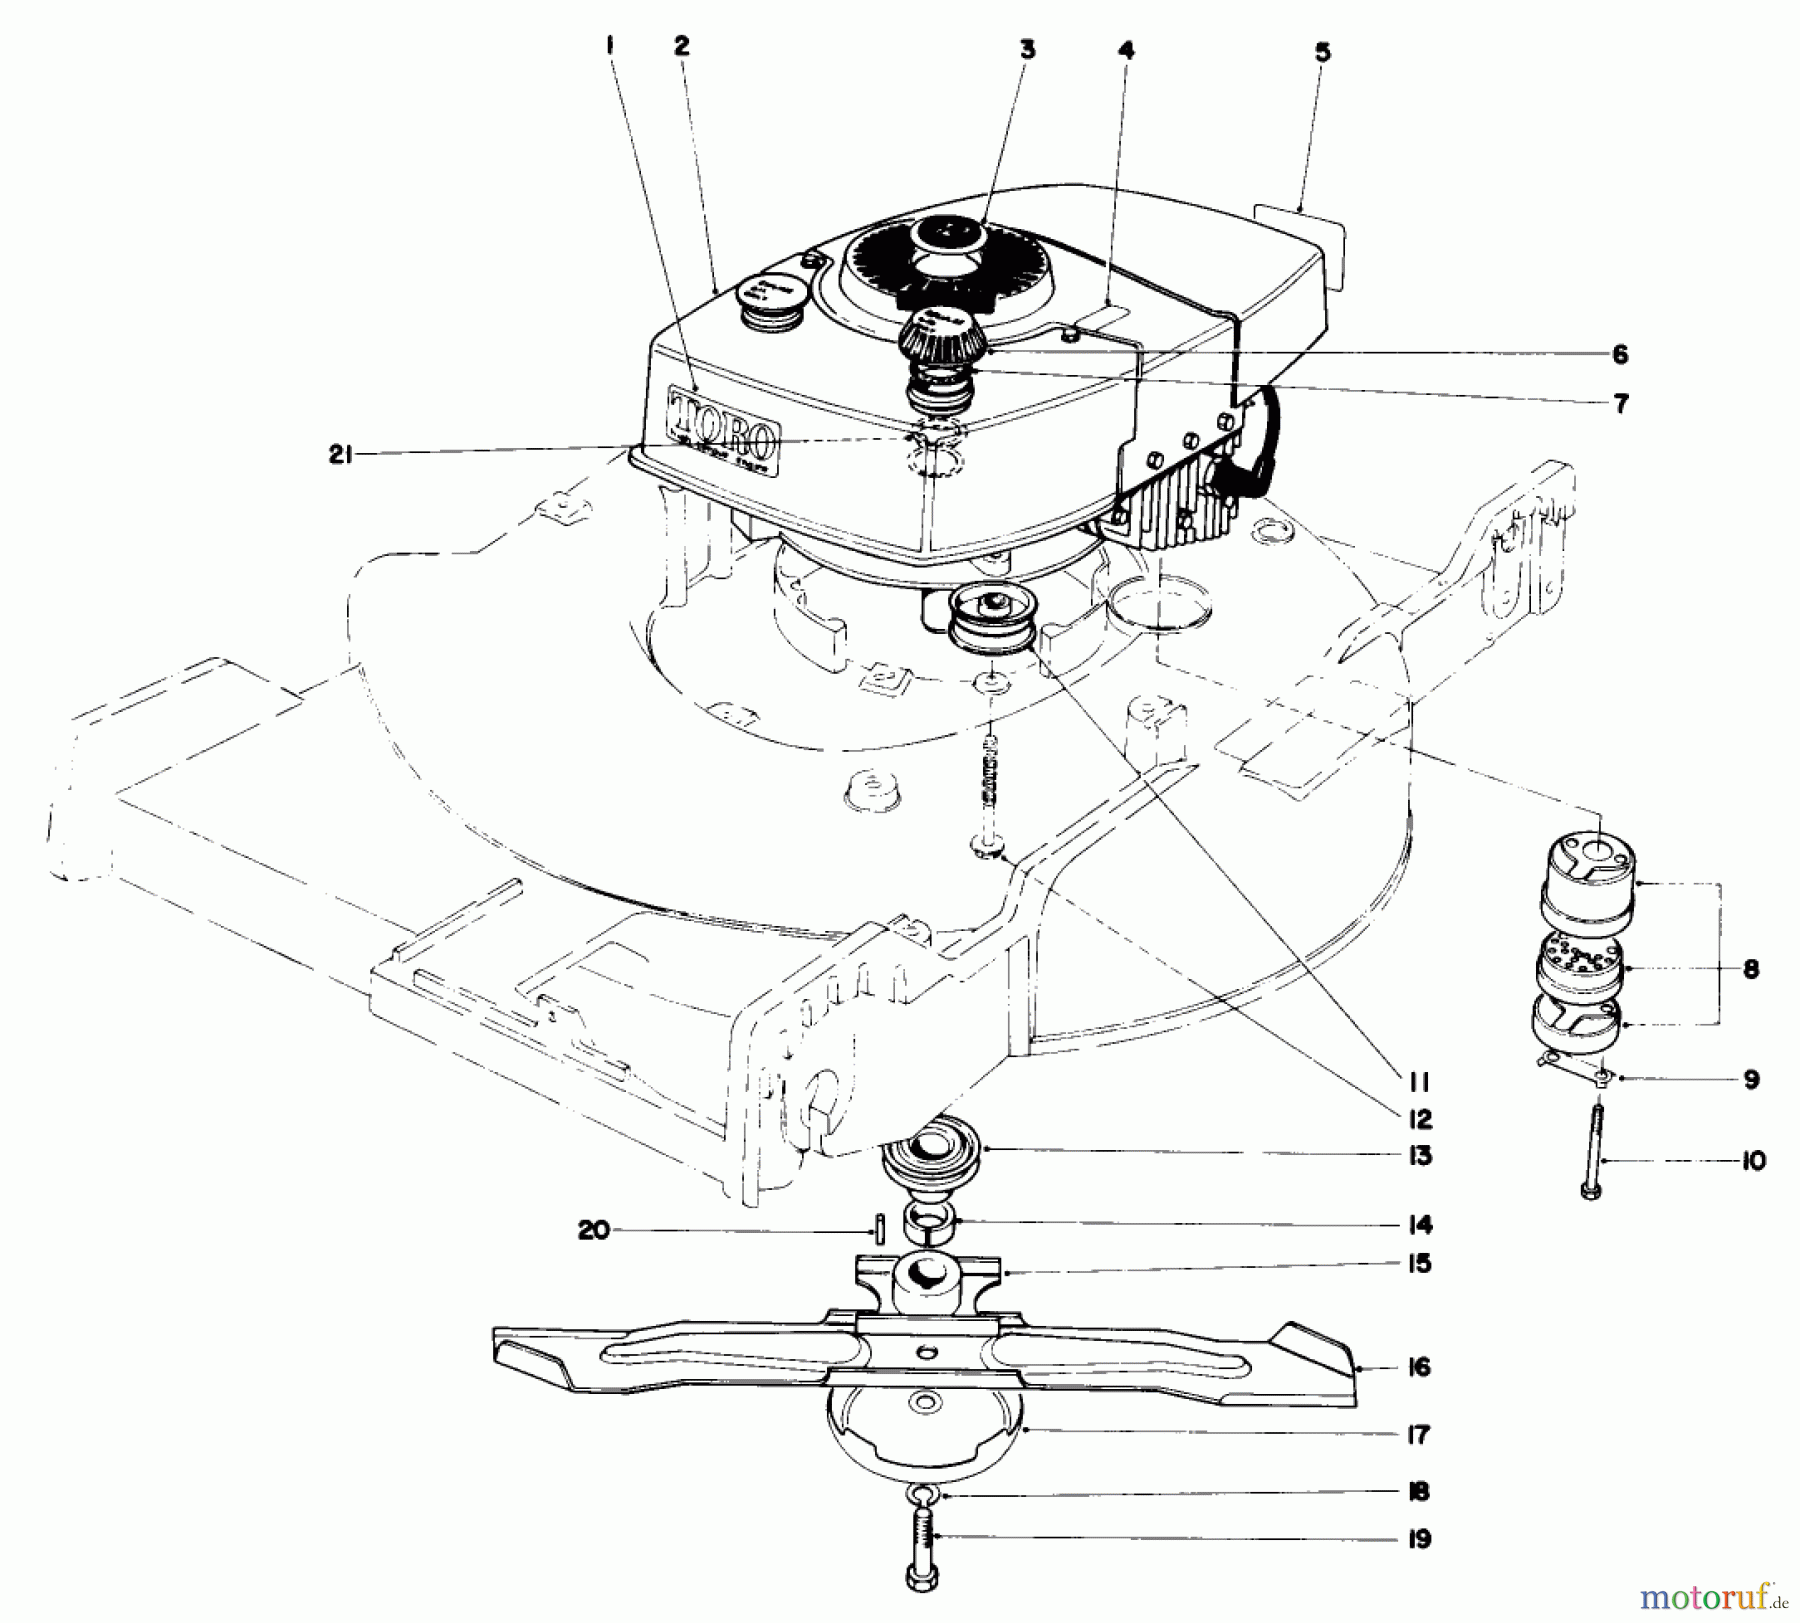  Toro Neu Mowers, Walk-Behind Seite 1 20506 - Toro Lawnmower, 1976 (6000001-6999999) ENGINE ASSEMBLY (MODEL 20506)